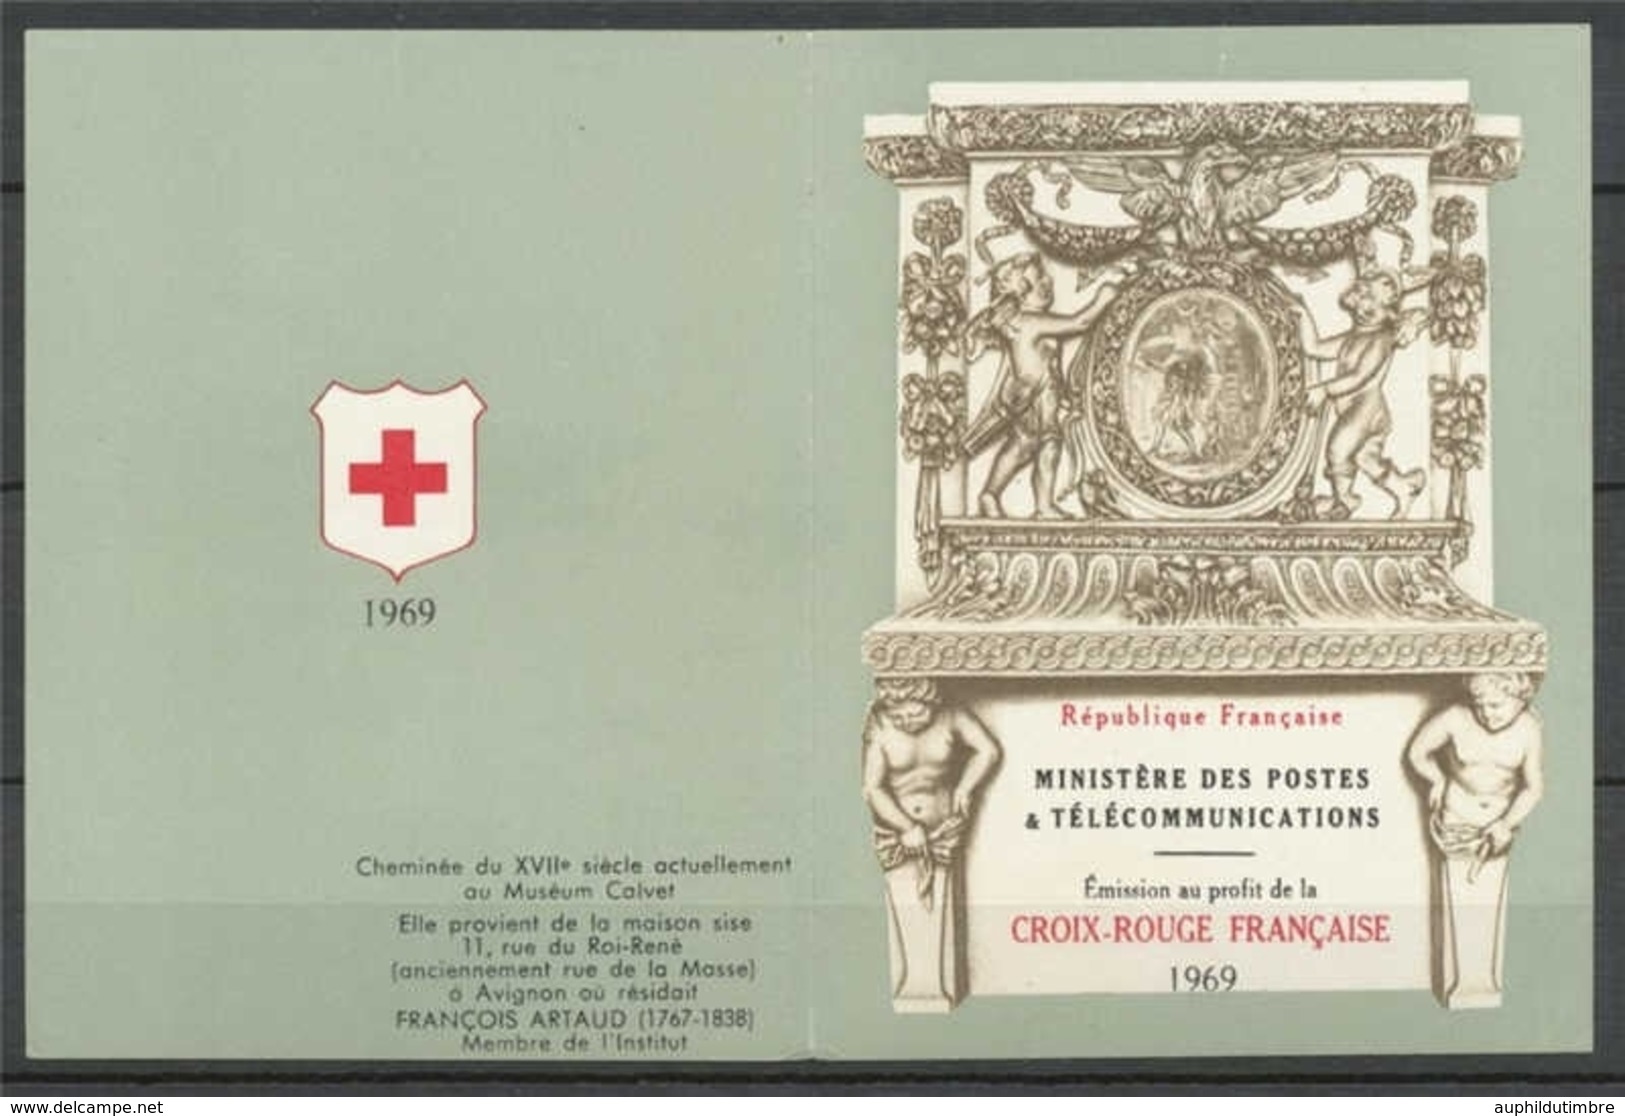 Croix-rouge Française 40c. + 15c. Et 40c. + 15c. YC2018 - Red Cross